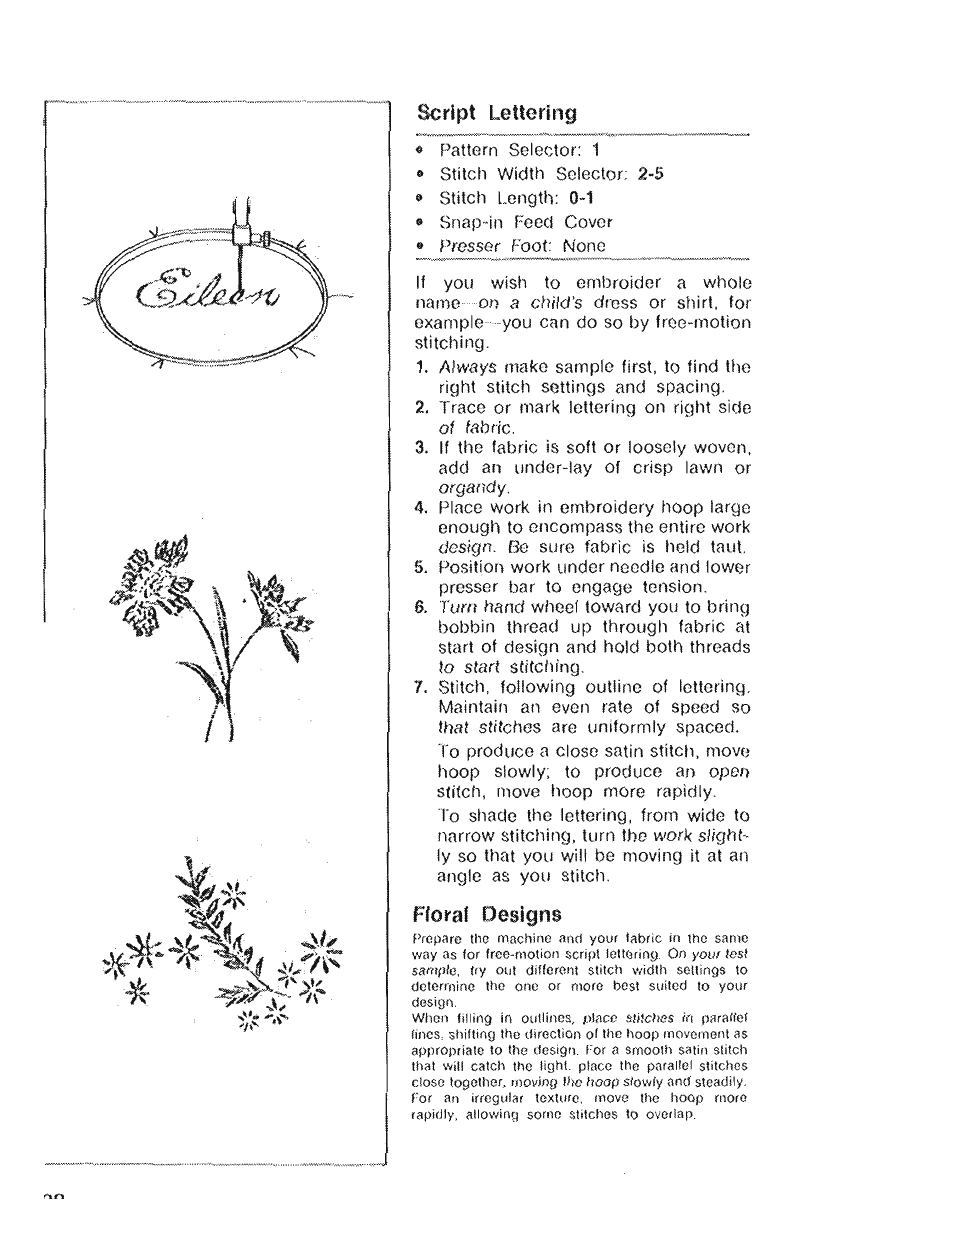 Script lettering, Floral designs | SINGER 4022 User Manual | Page 30 / 56